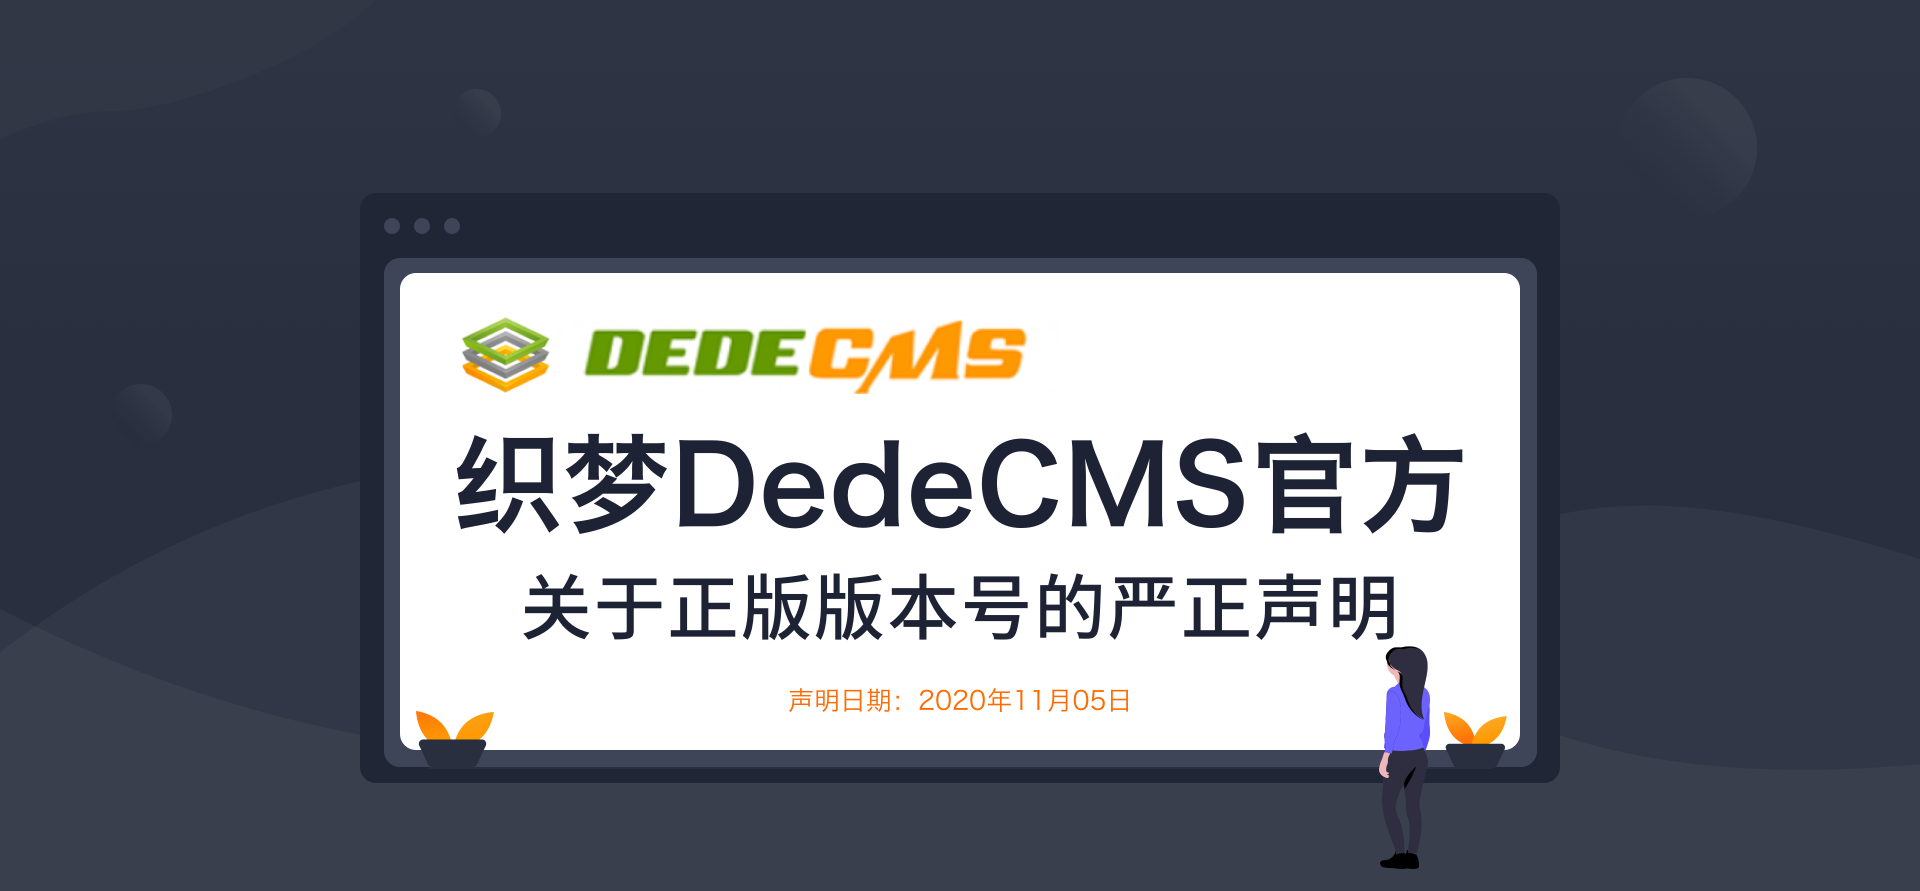 织梦DedeCMS：V6非官方版本 不会向开发者收取开发认证费